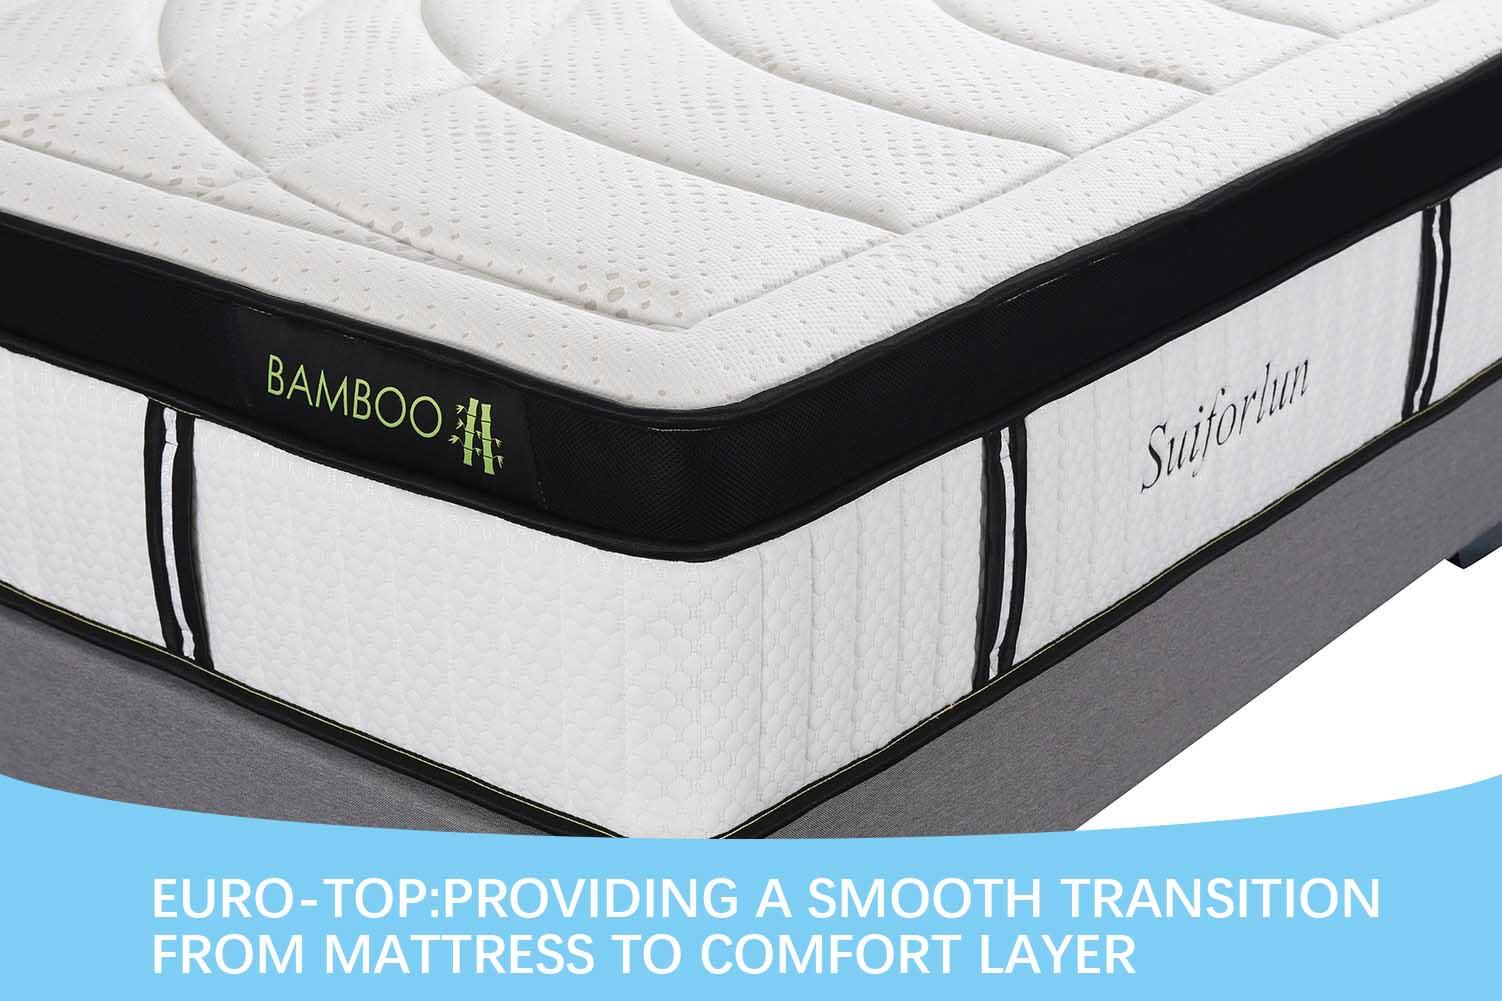 Suiforlun mattress white gel hybrid mattress supplier for home